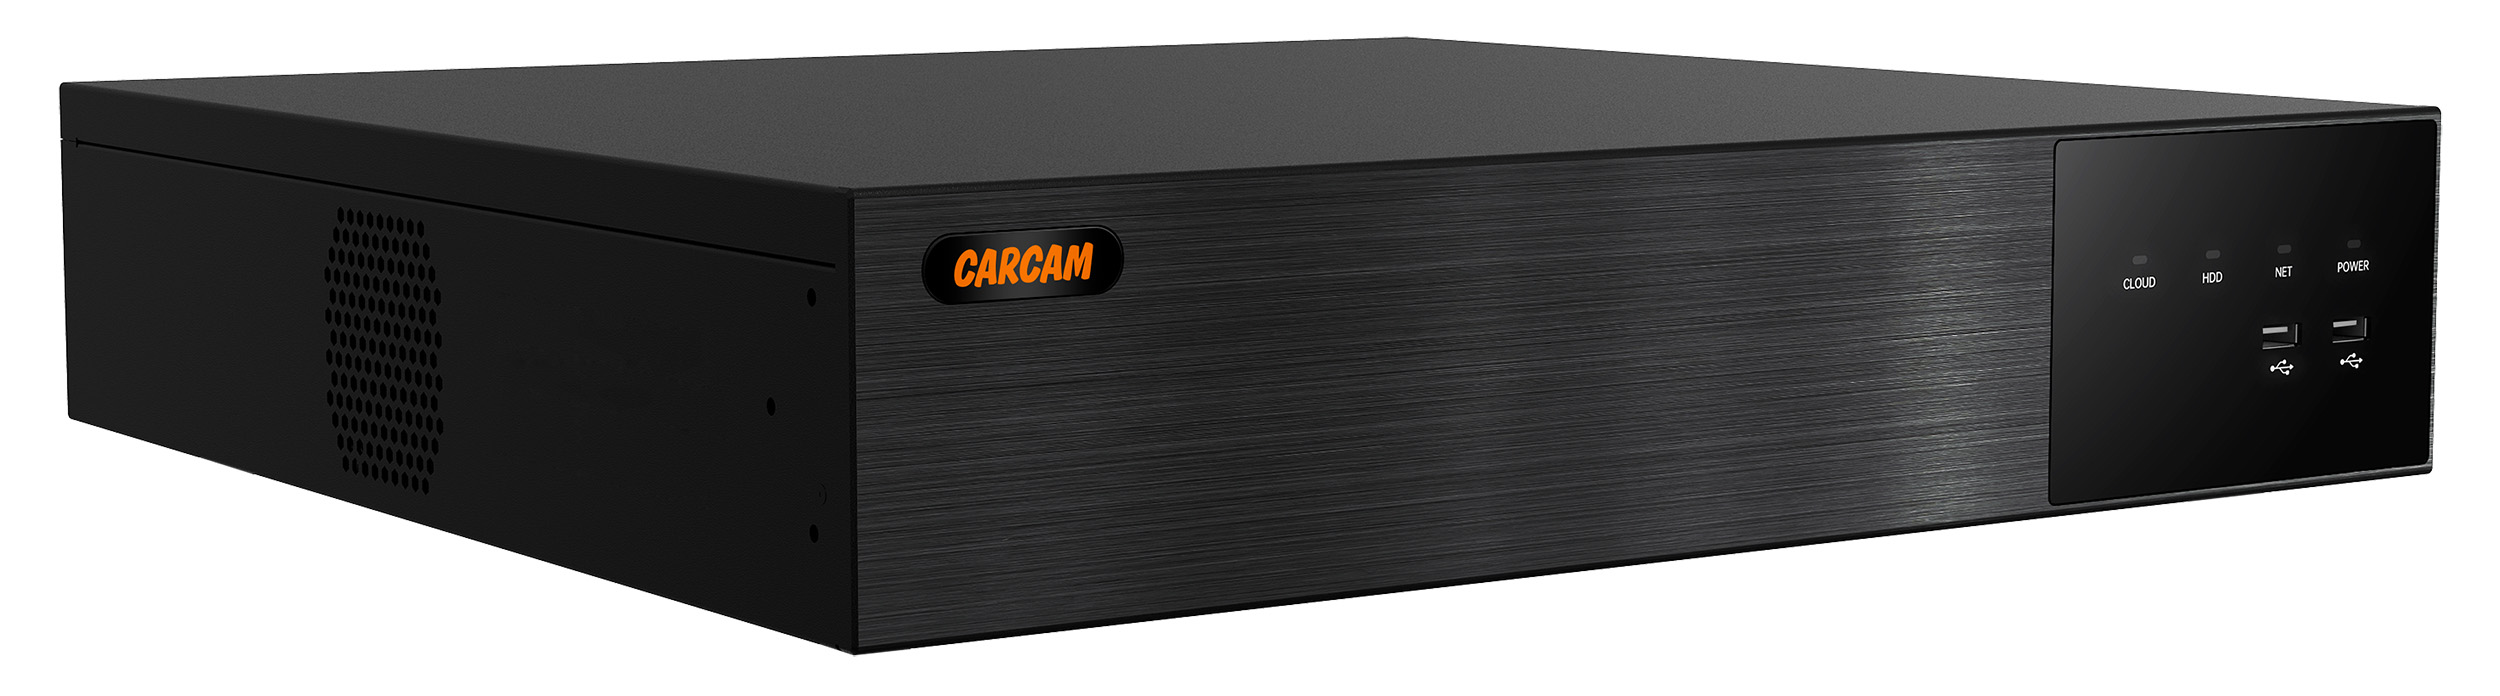 64-канальный IP-видеорегистратор CARCAM 64CH NVR 8764 CARCAM